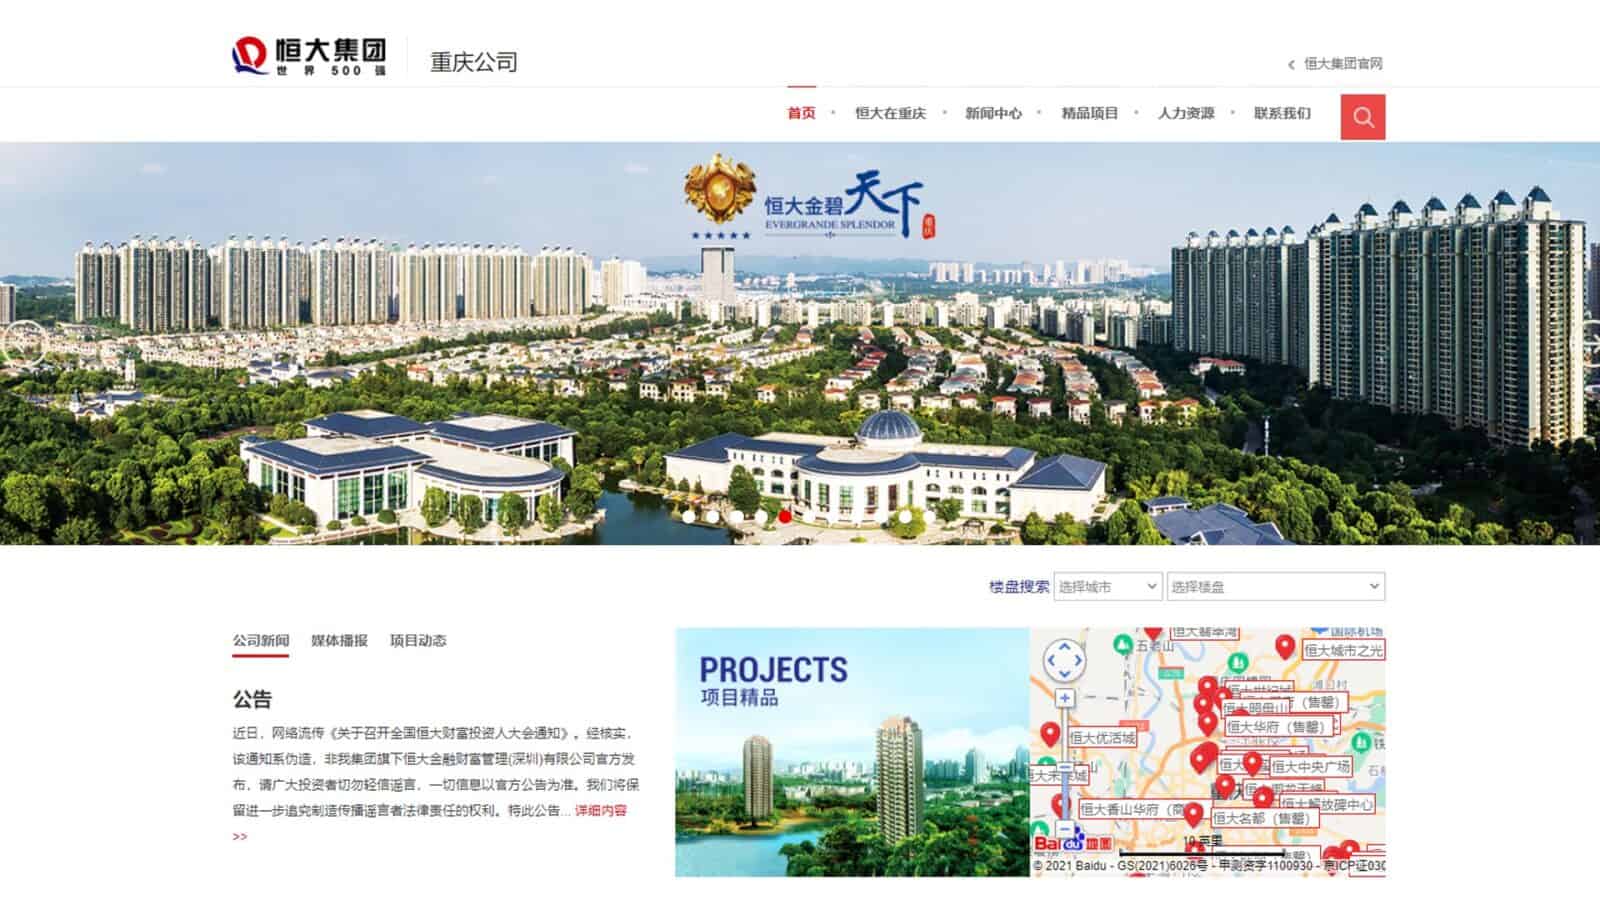 Evergrande Aktie insolvent immobilienentwickler aus asien china zahlungsausfall